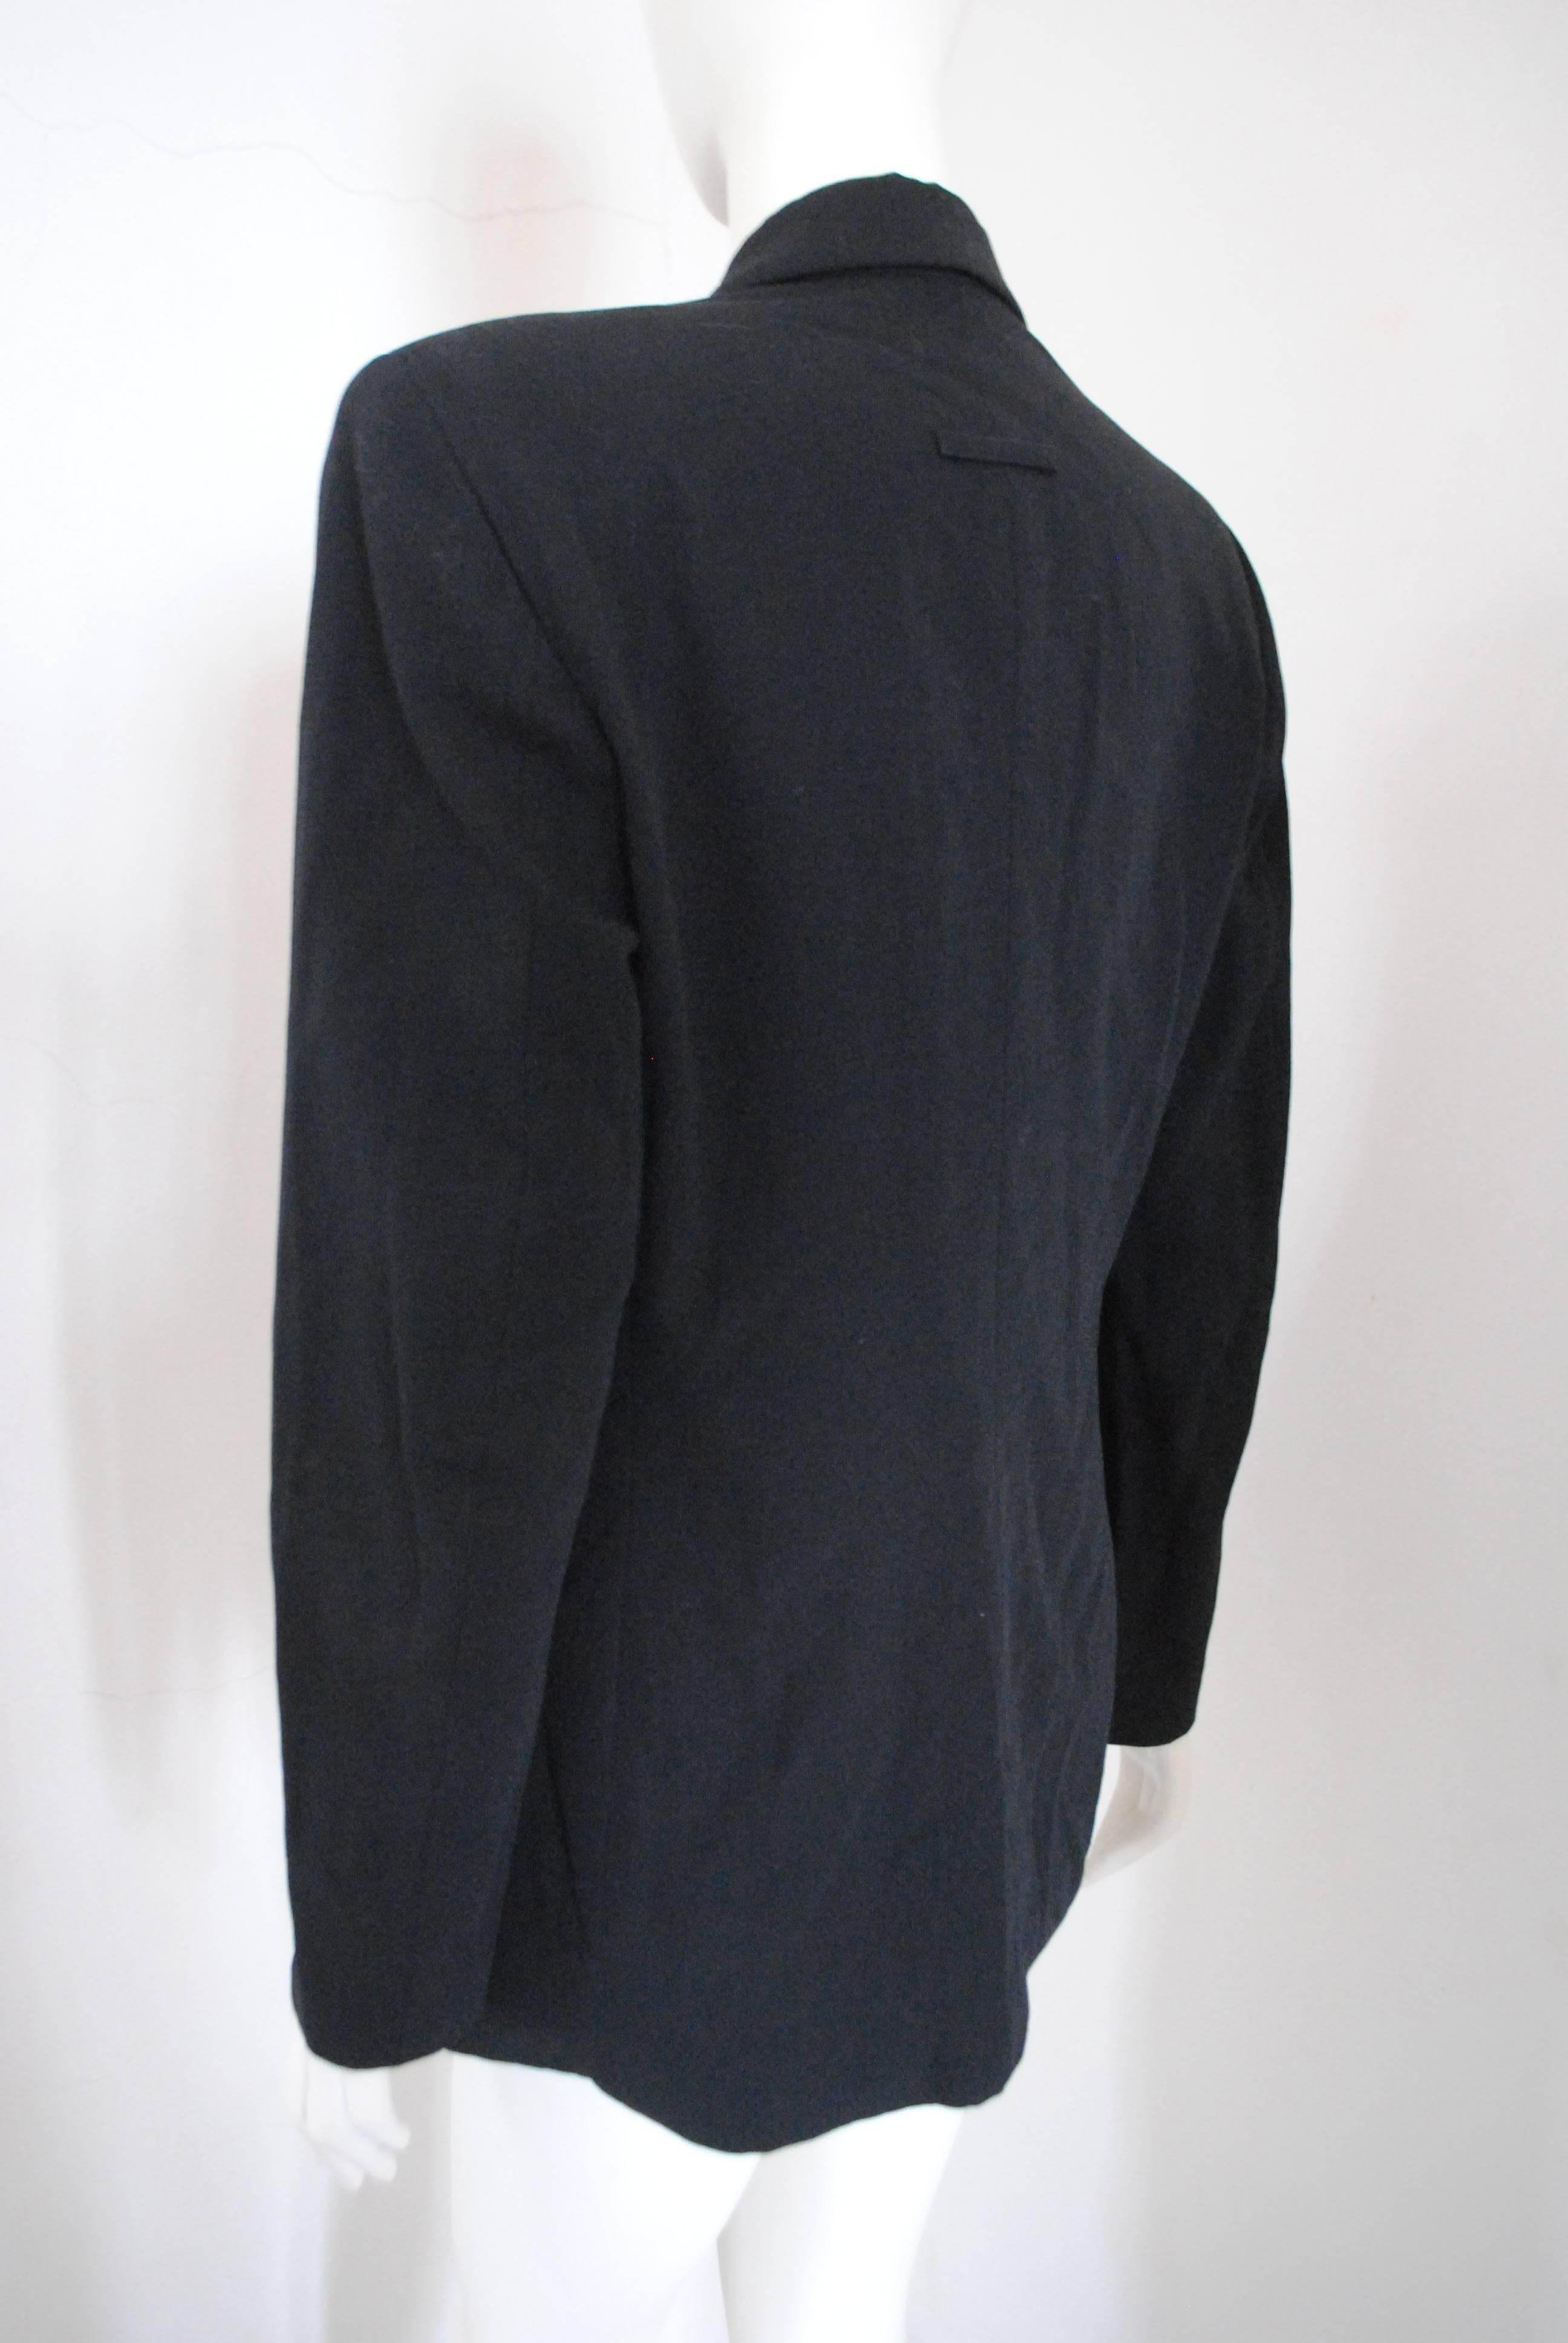 1997 - 1998 Rare Jean Paul Gaultier Black Wool Jacket 1